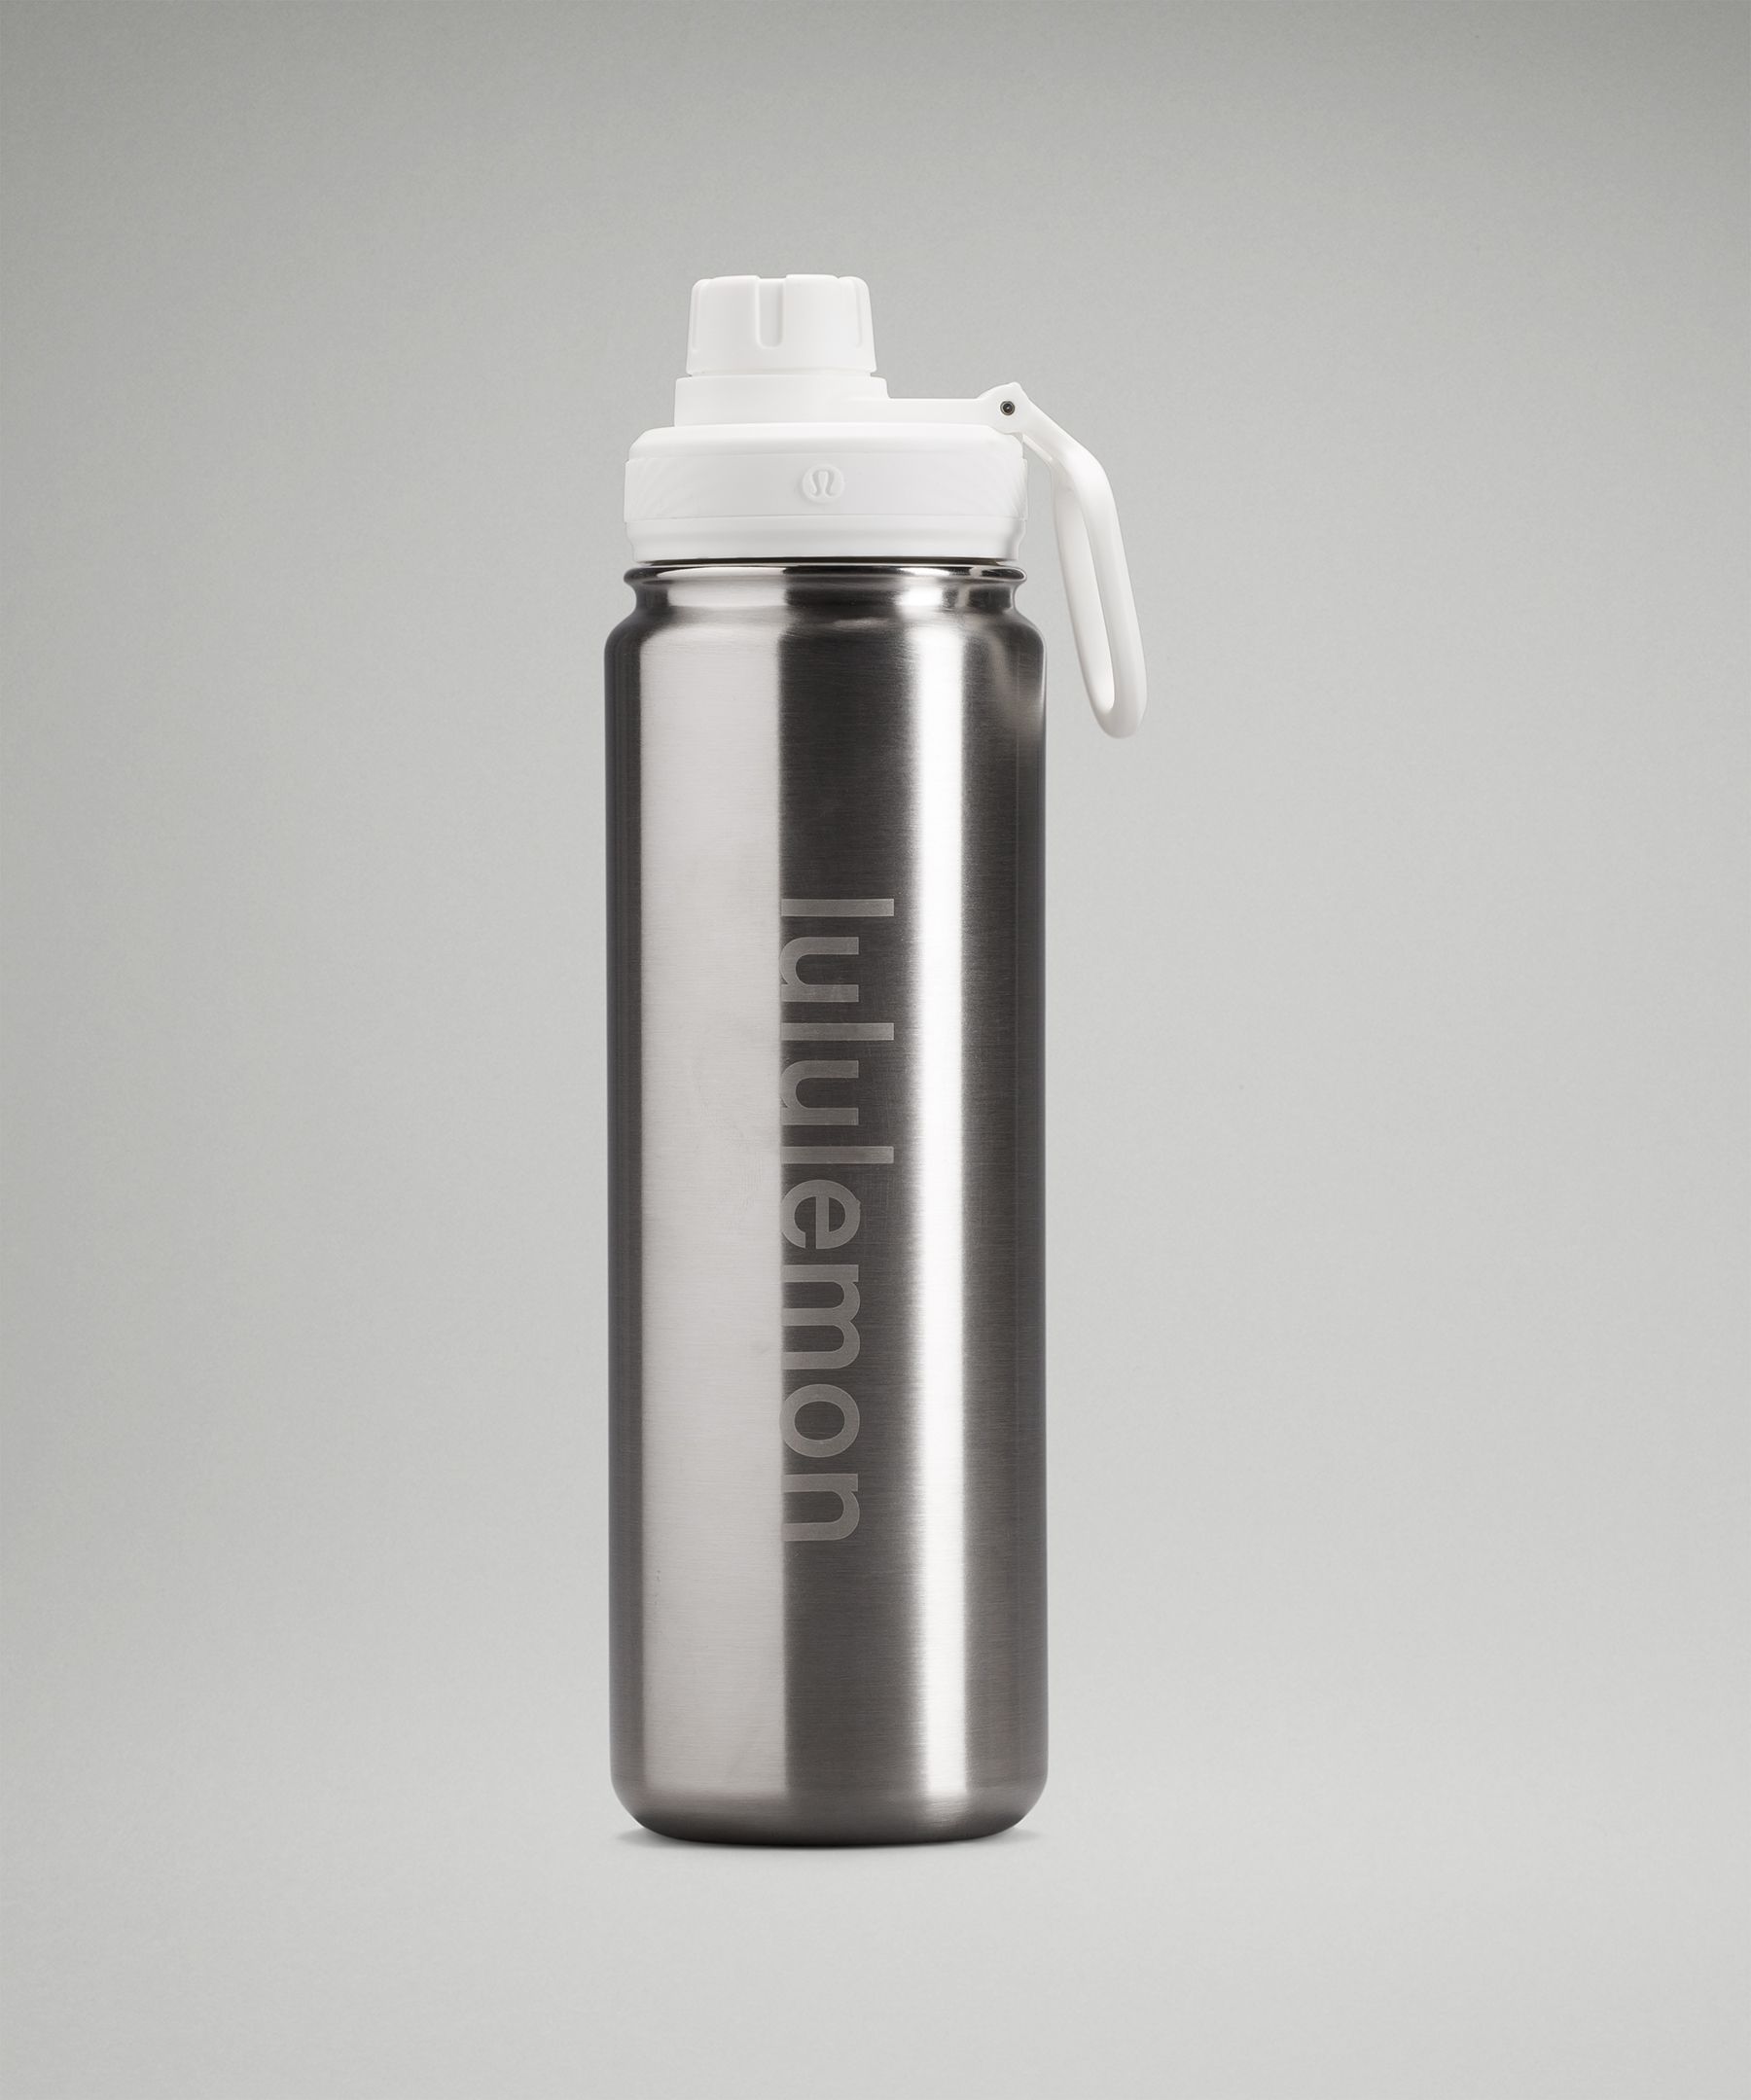 Lululemon Back To Life Sport Bottle 24oz In Stainless Steel/white